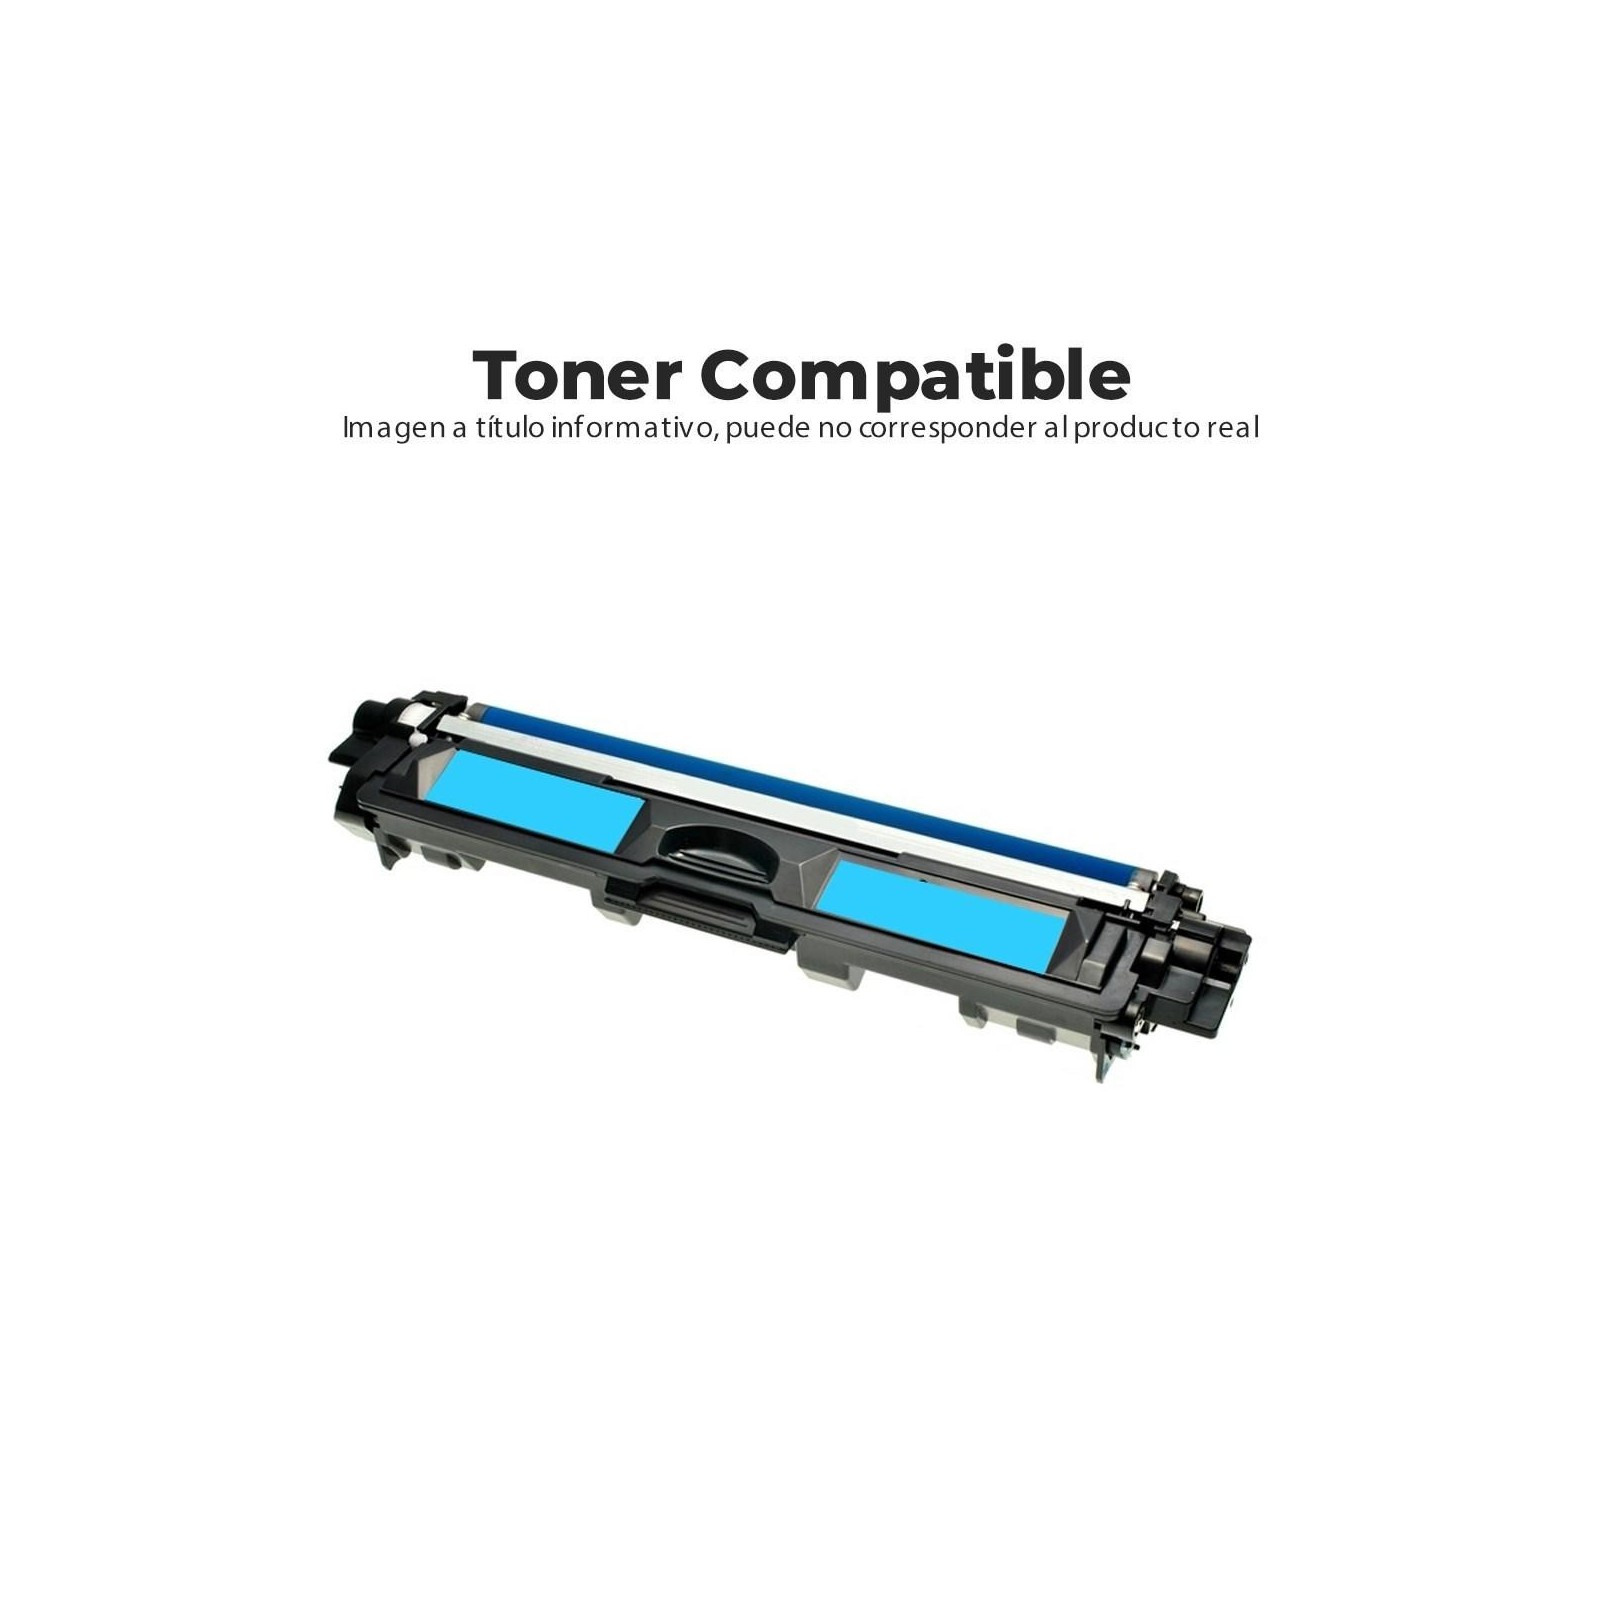 Toner Compatible Brother Tn248 Xl Cian 2.3K